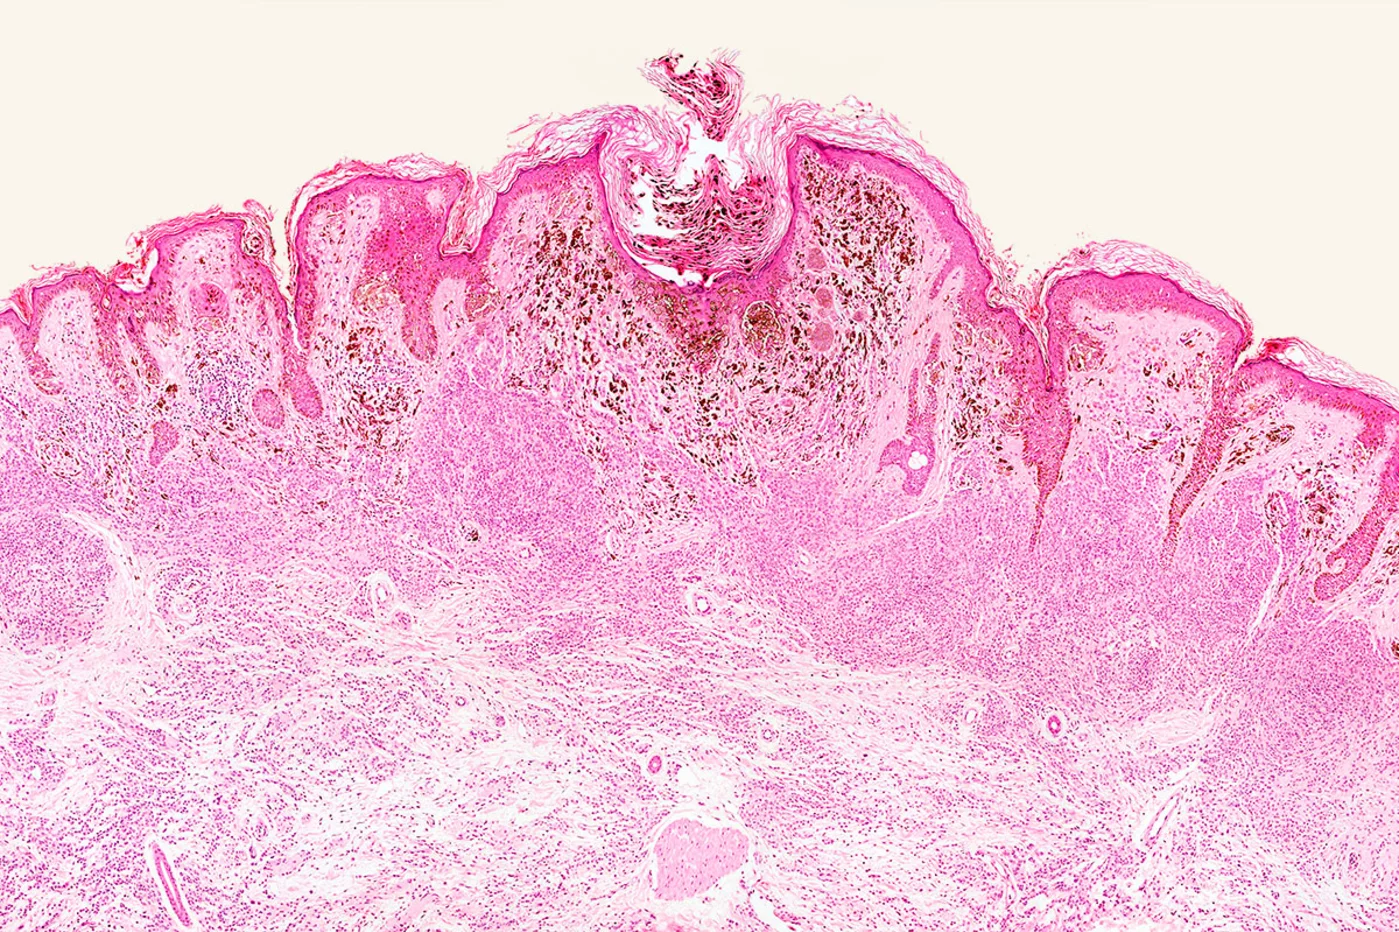 Imagen del microscopio de melanoma maligno.